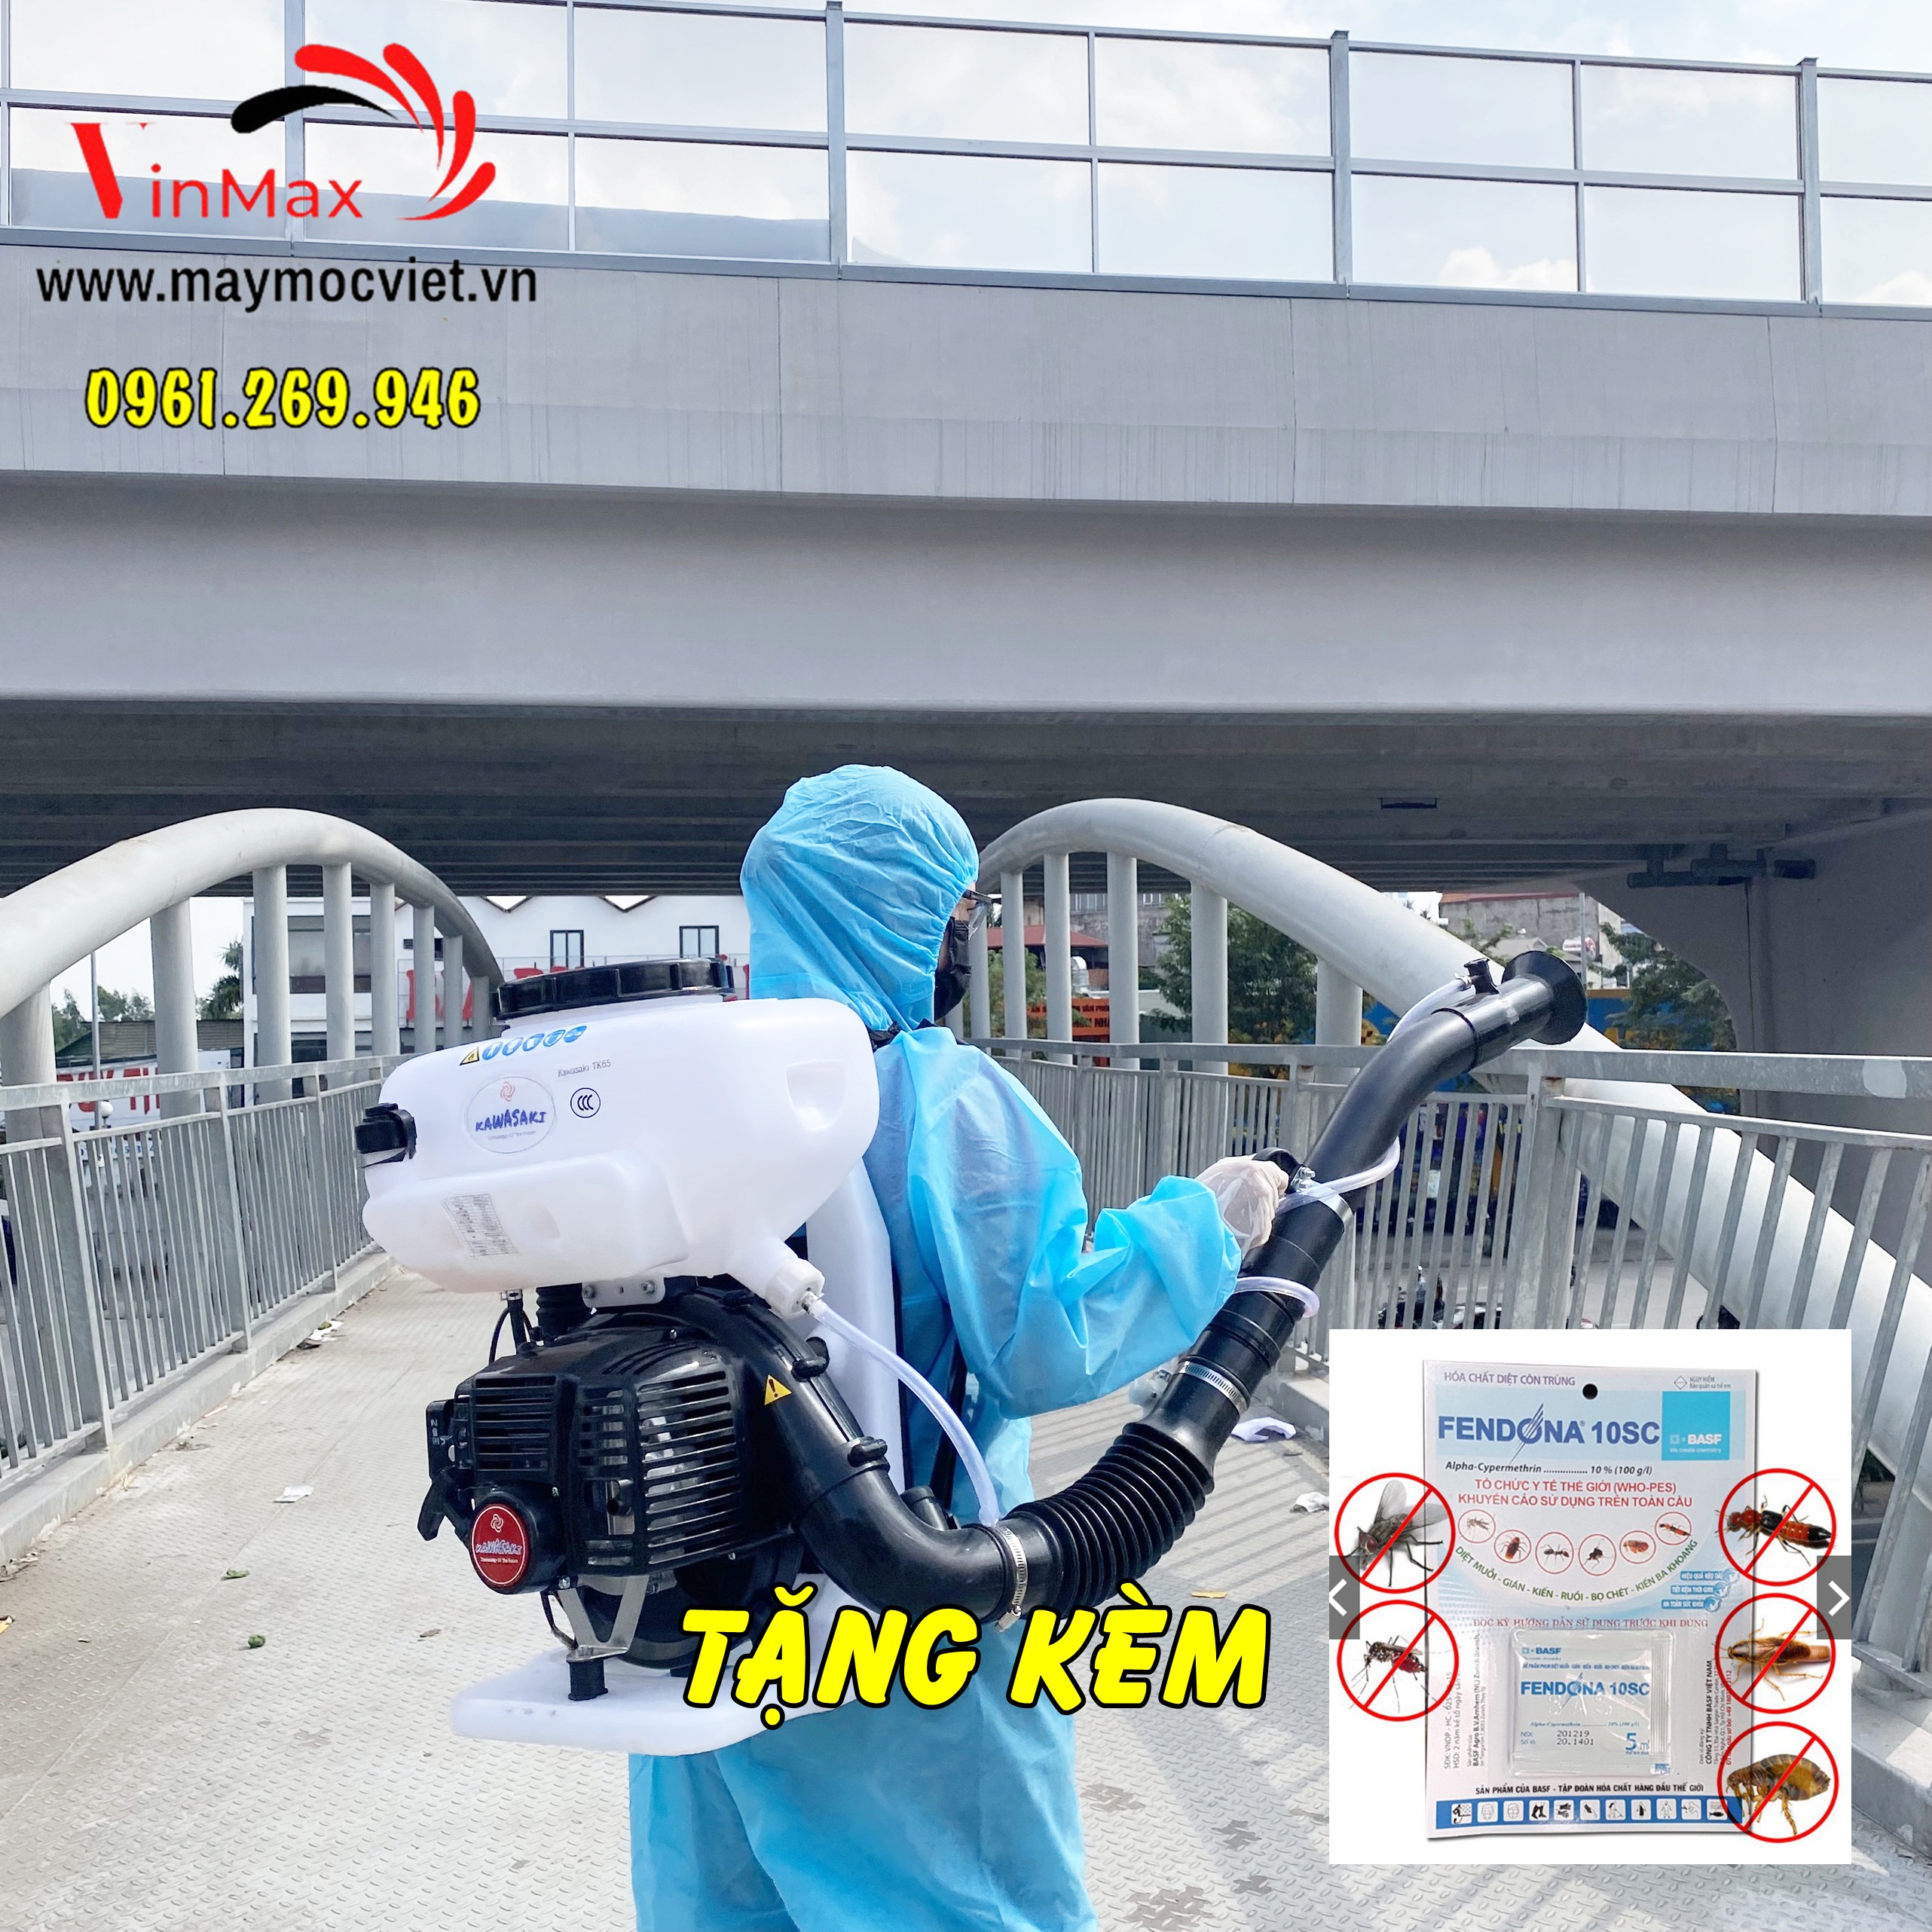 Máy phun muỗi Kawasaki TK65 tặng kèm hóa chất diệt côn trùng